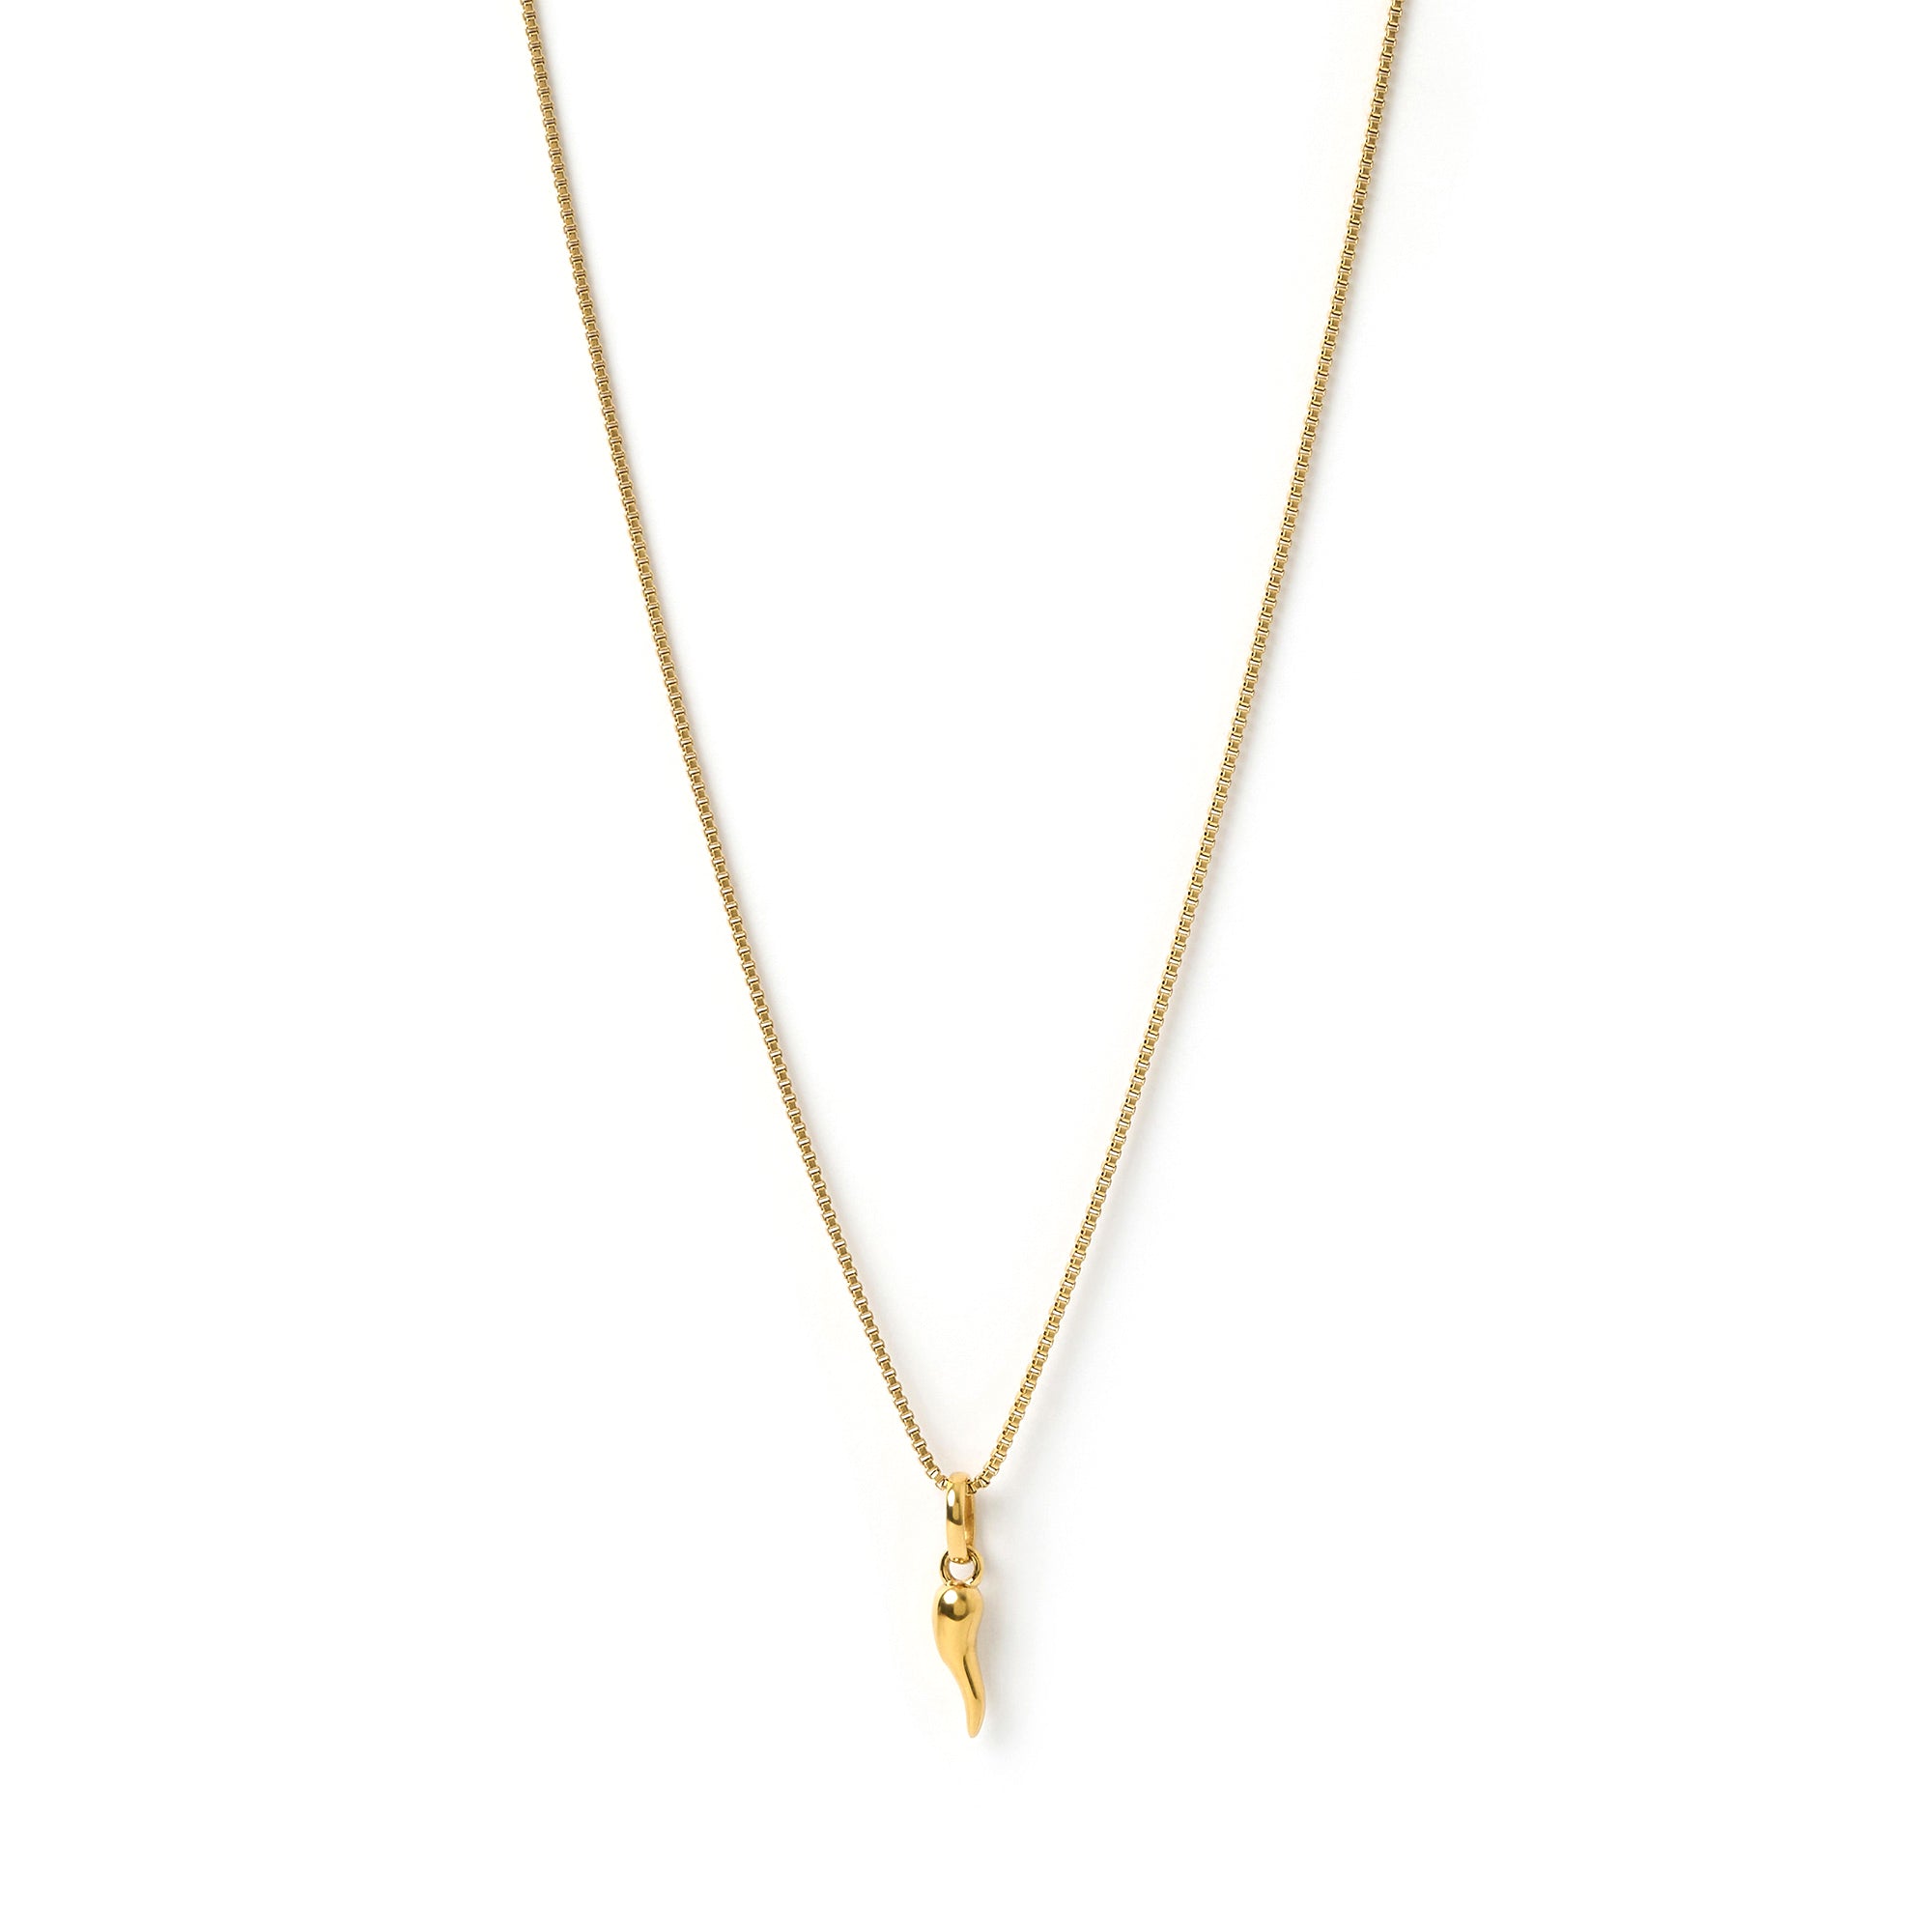 Cornicello Gold Charm Necklace - Small